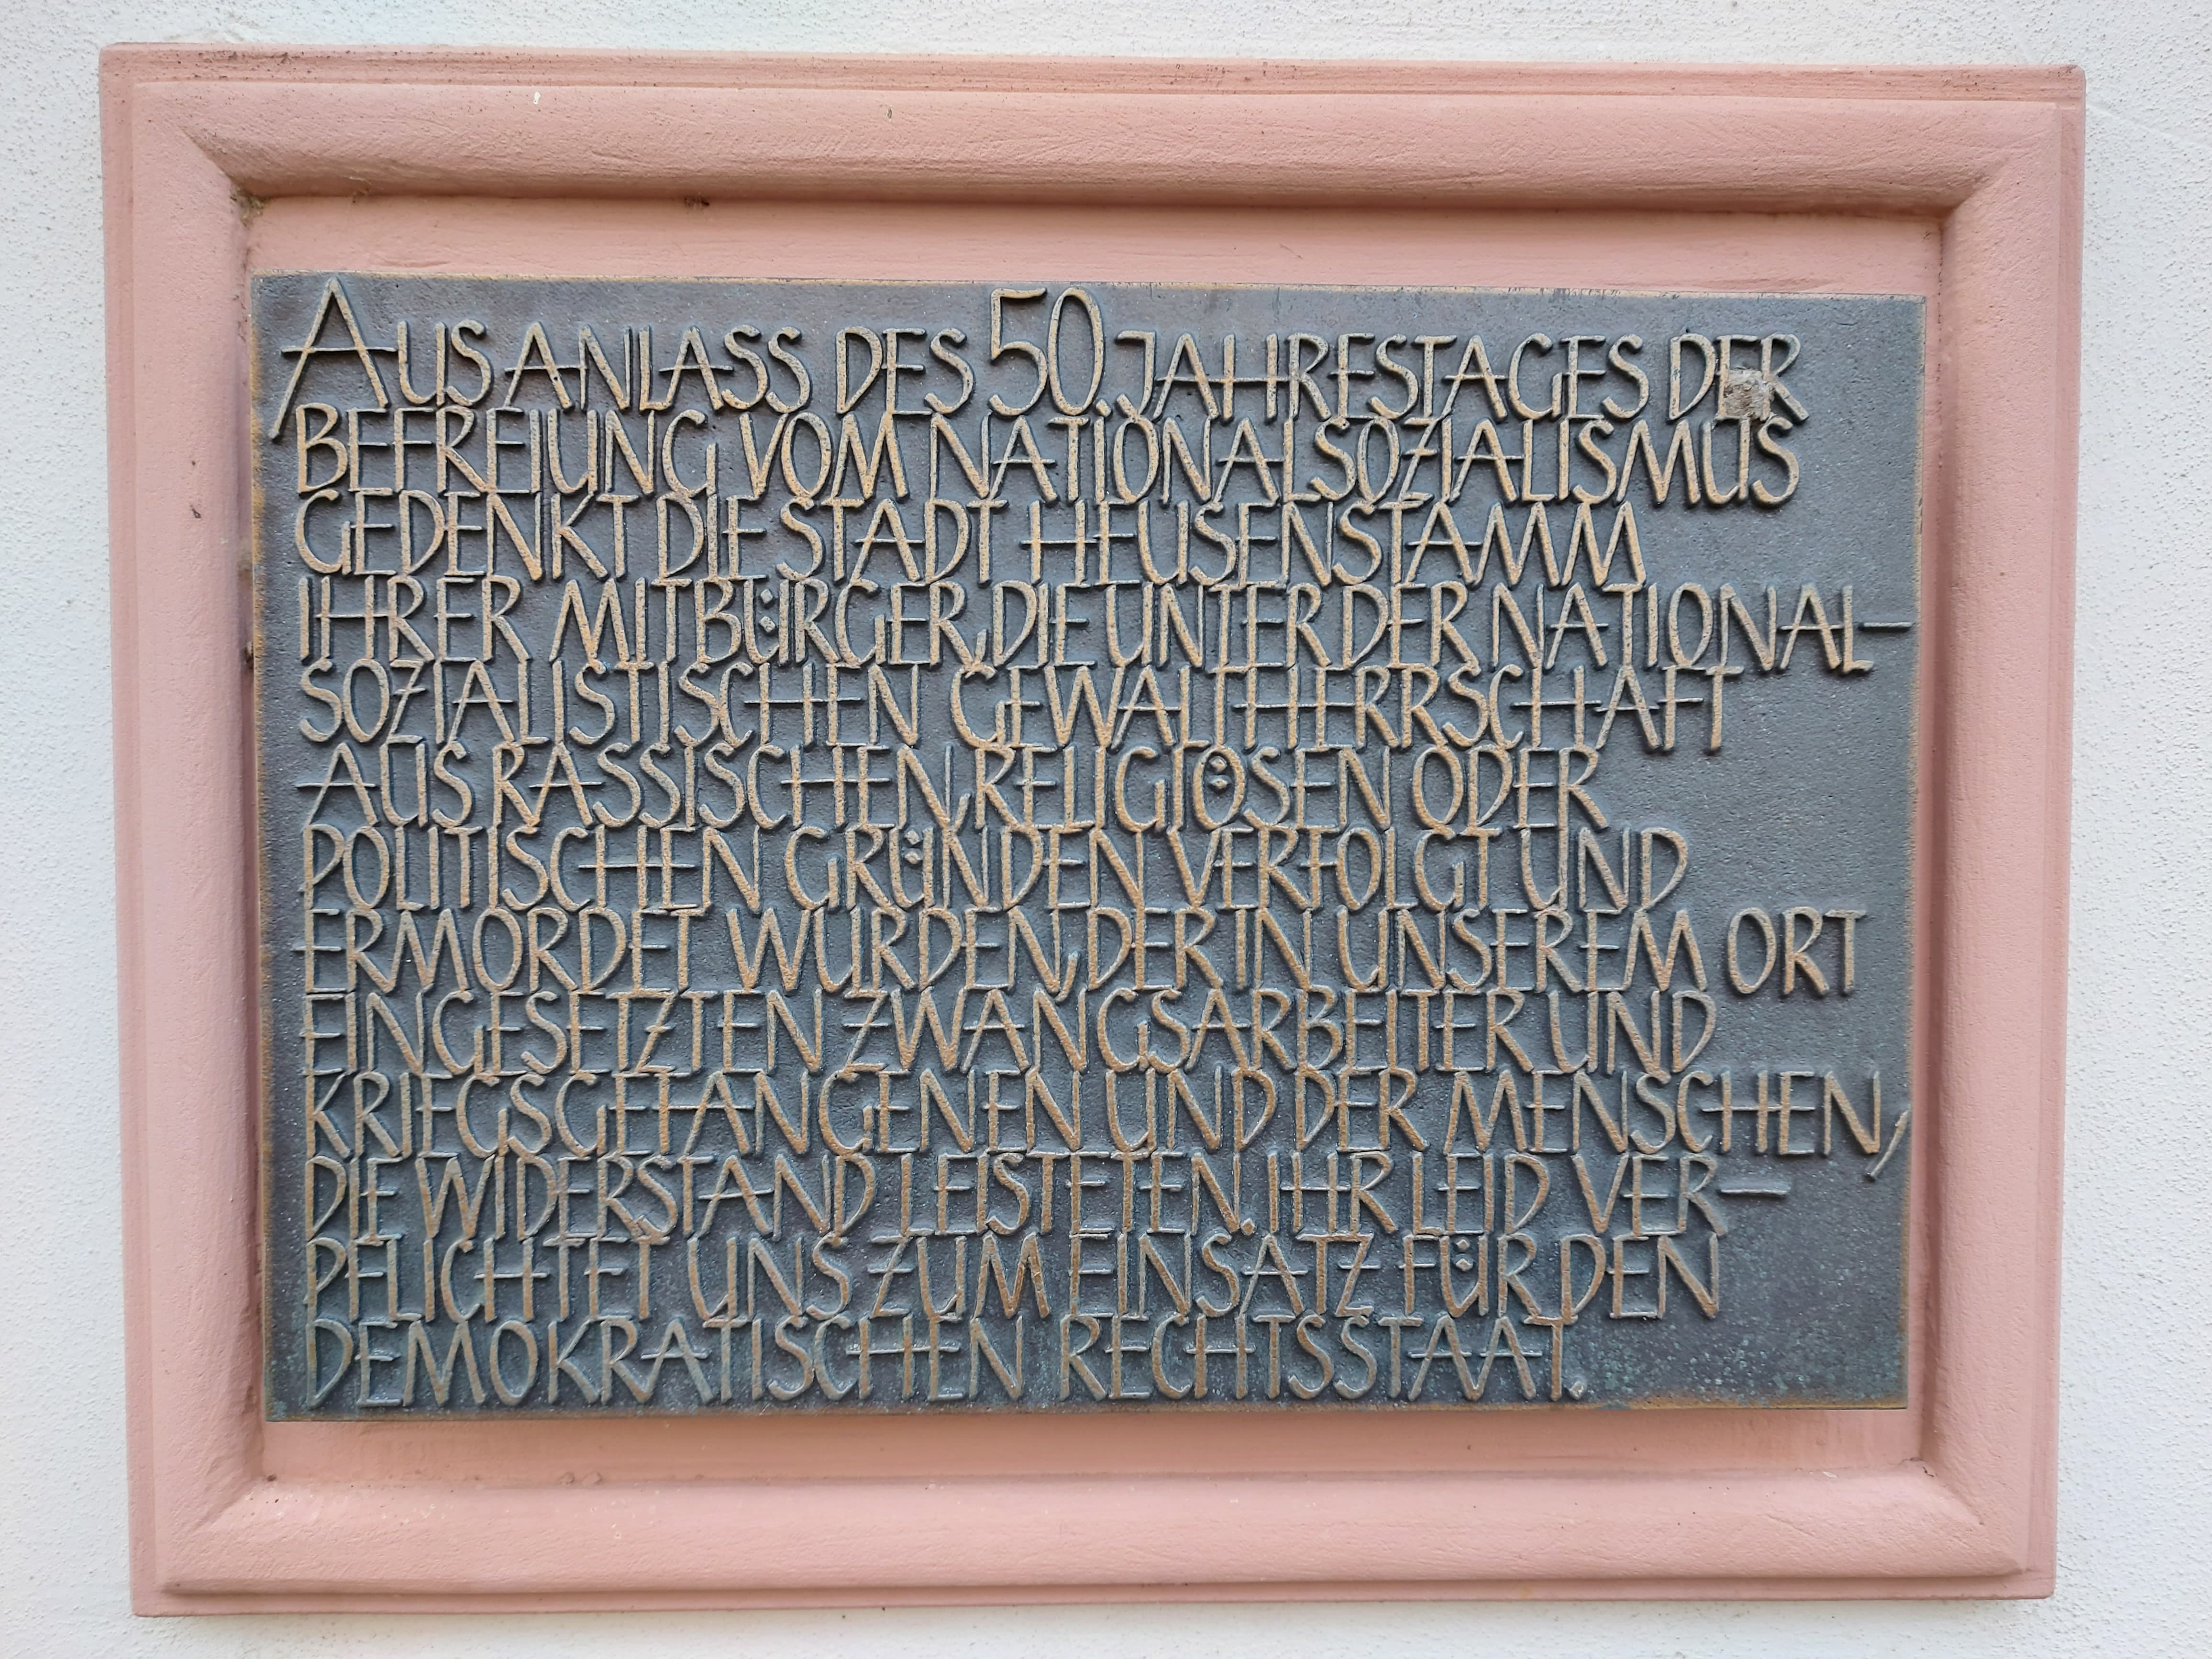 Gedenktafel aus dem Jahr 1995 für die Opfer der NS-Zeit in Heusenstamm